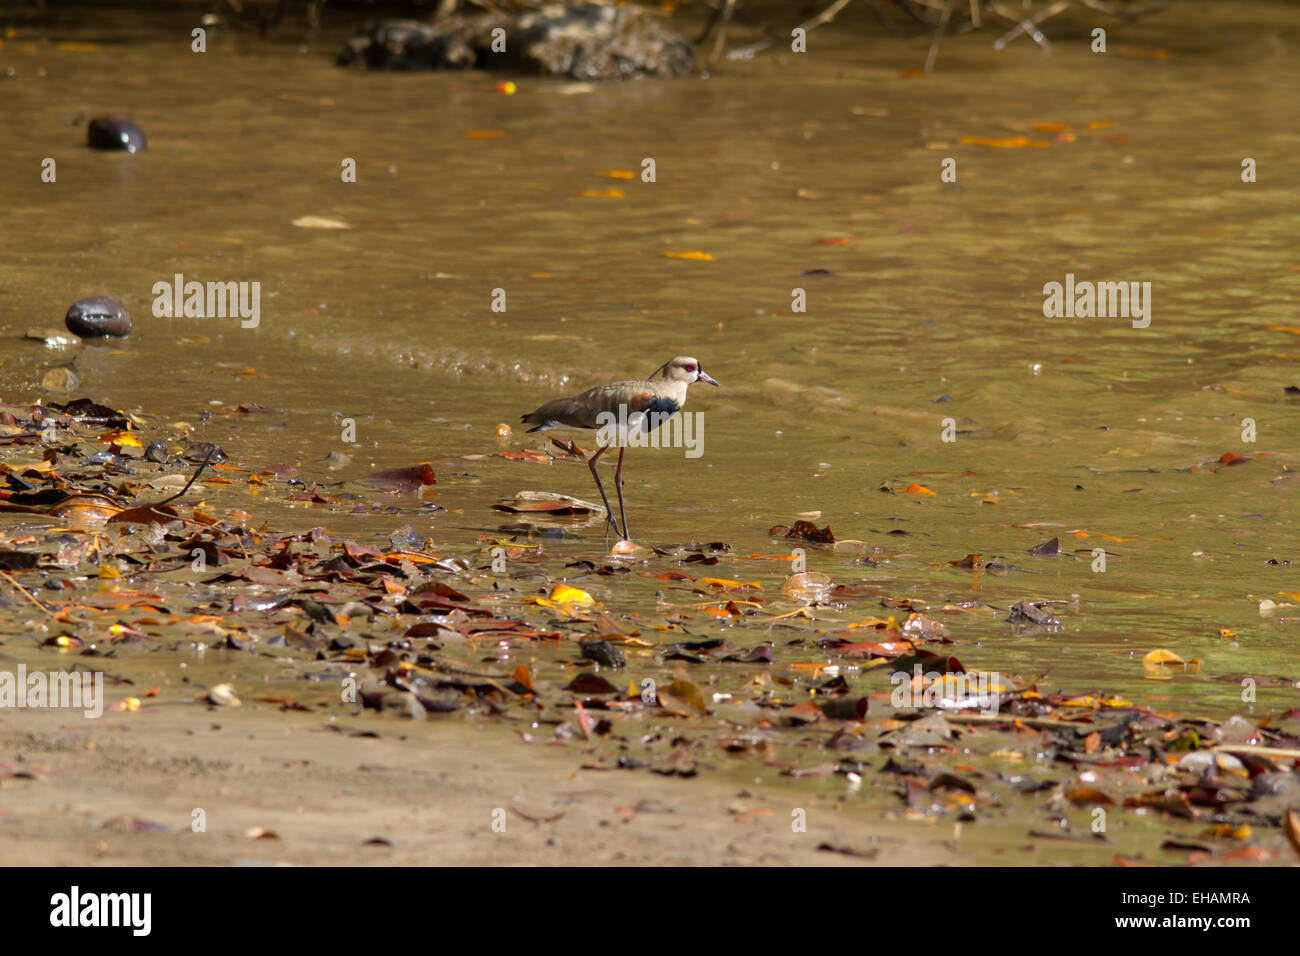 Le sud de sociable (vanellus chilensis) debout sur une rive du lac Banque D'Images